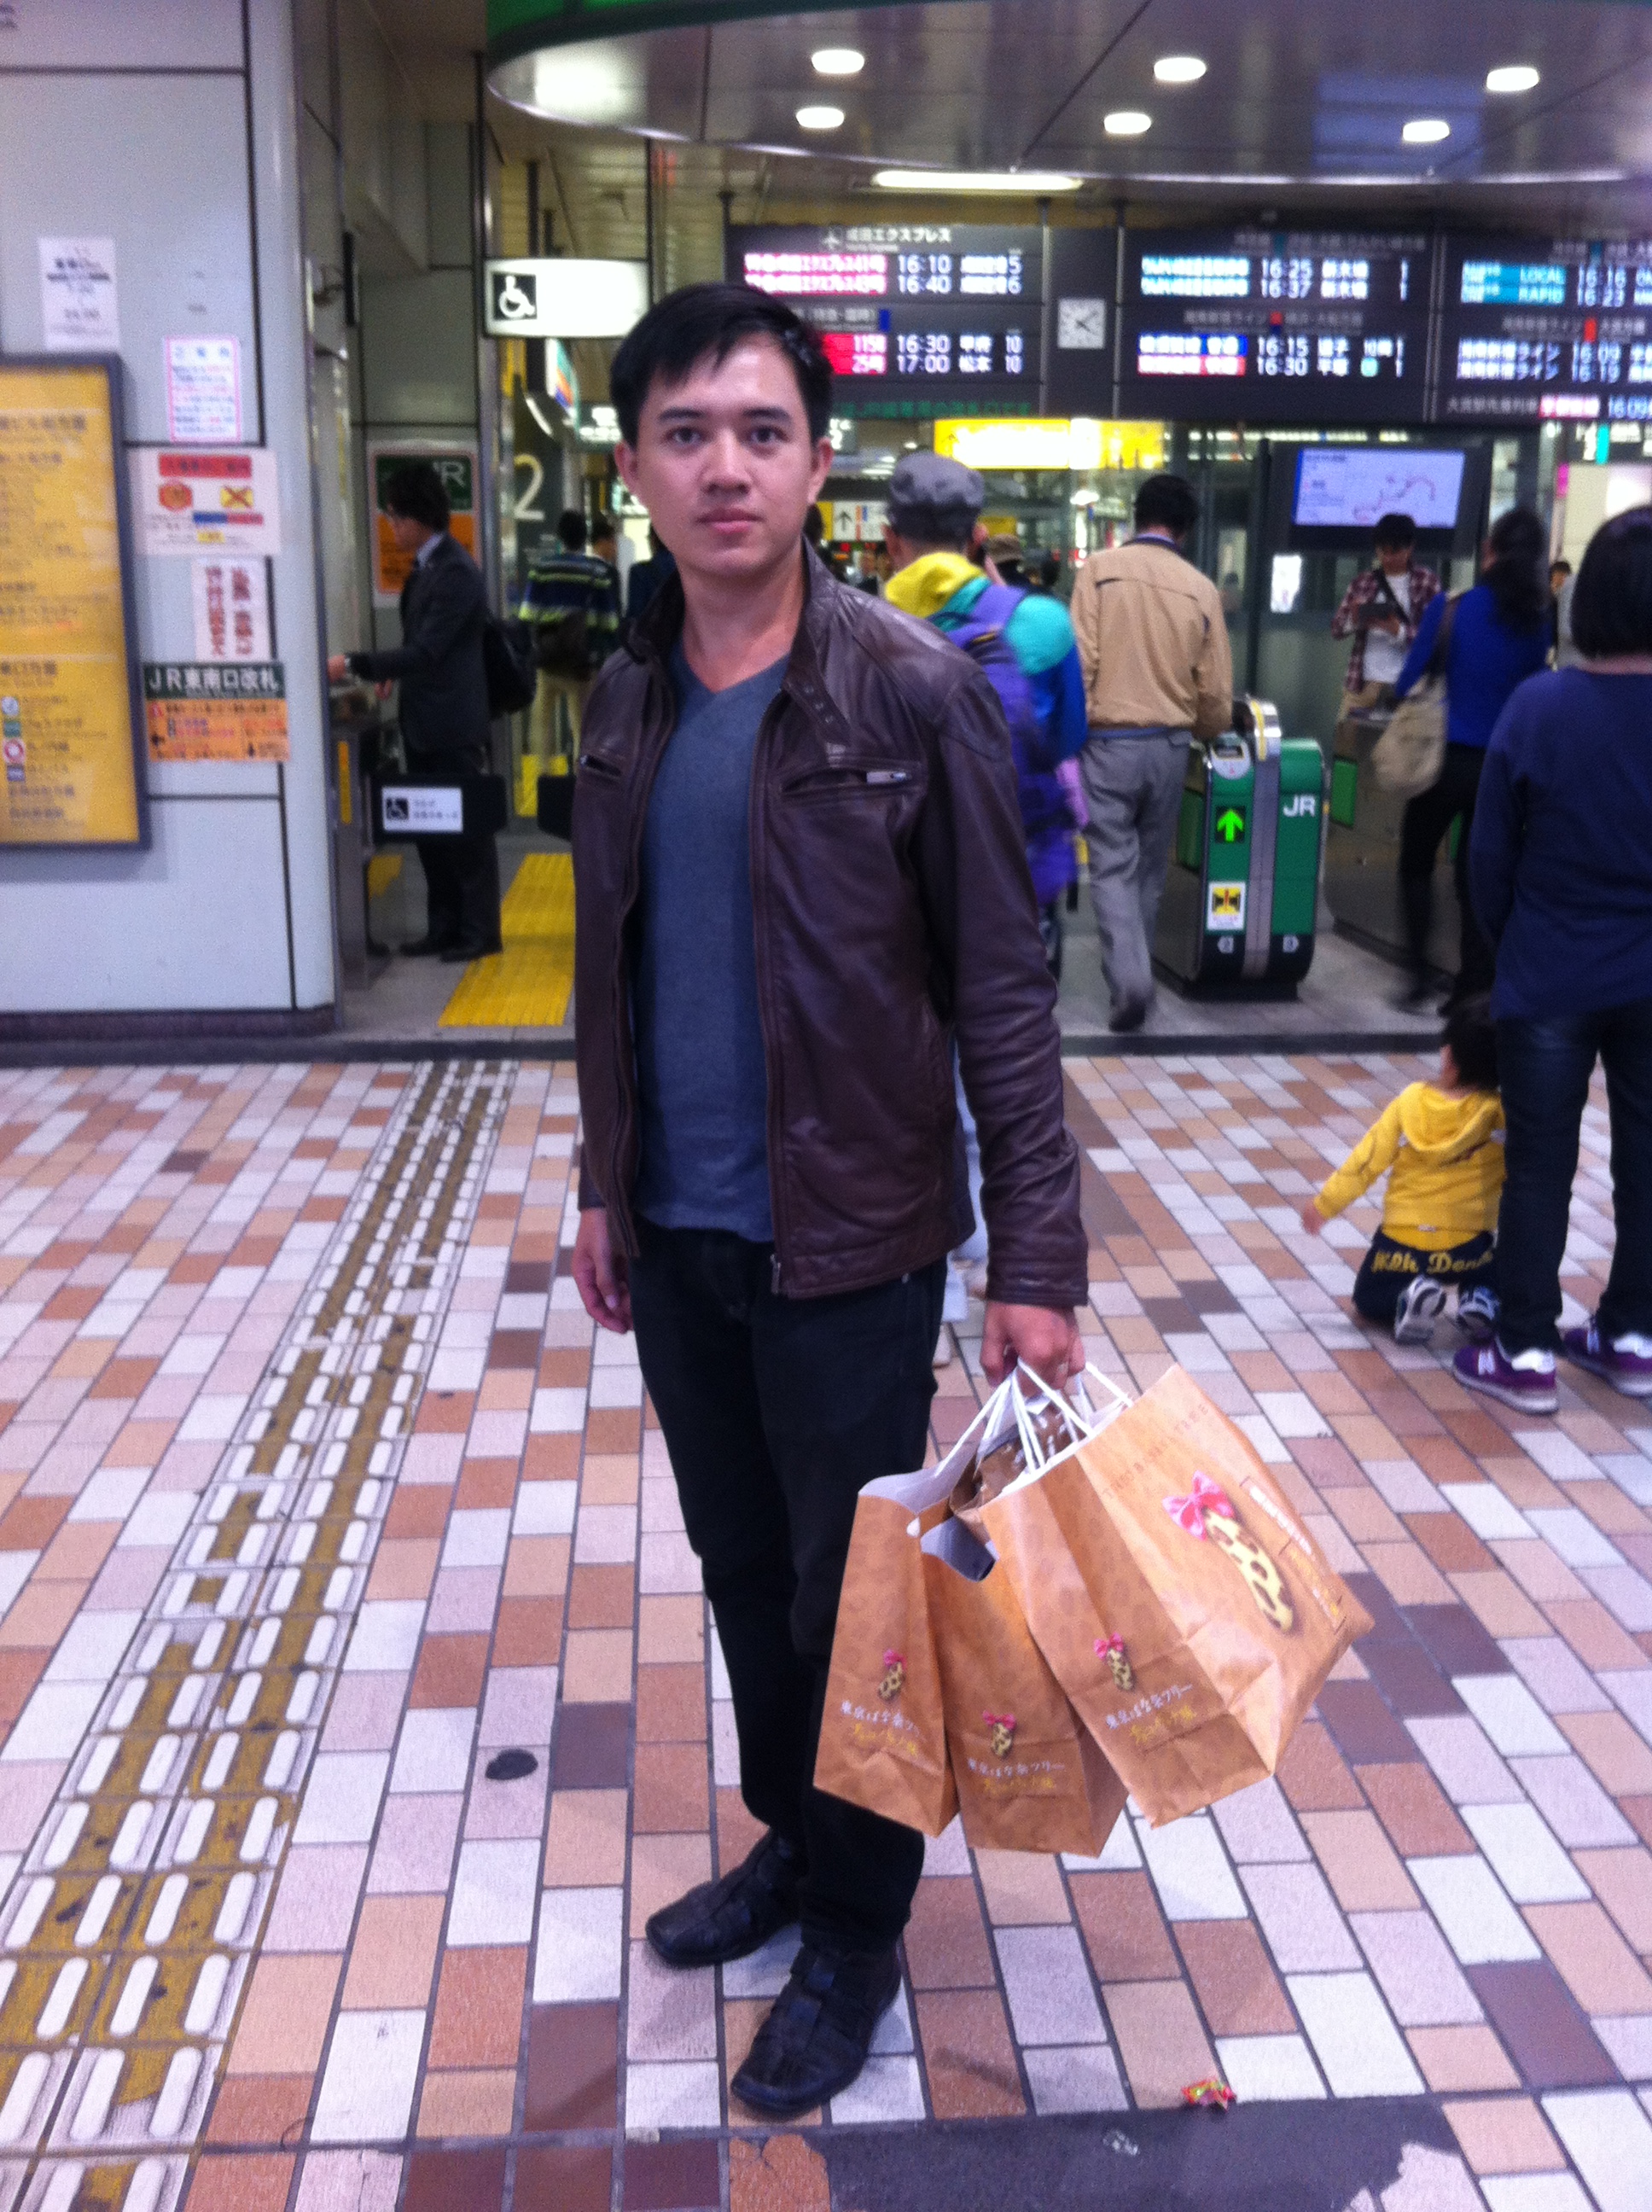 โรงแรมร้านอาหารสถานีรถไฟญี่ปุ่นโตเกียวแนะนำสอบถามรีวิวPicture 319